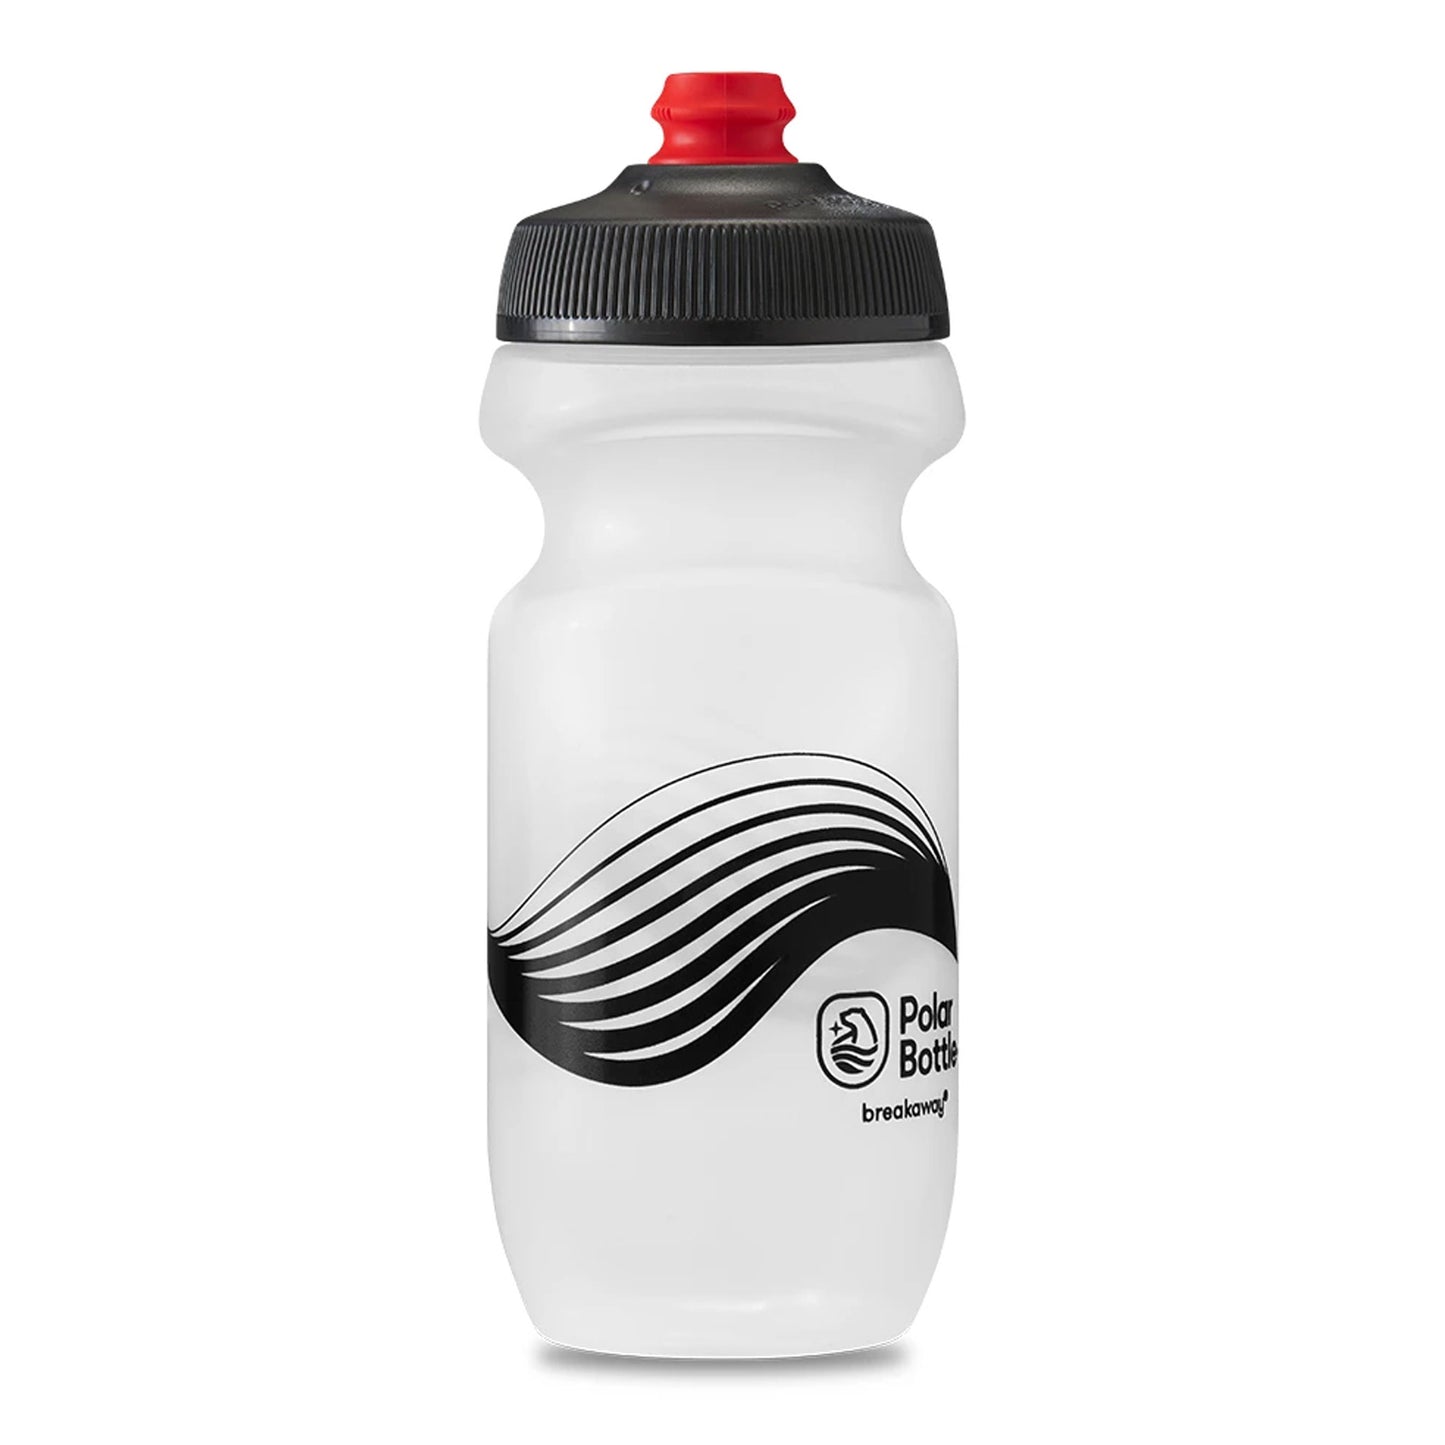 Polar Bottle Breakaway Wave Water Bottle, 600ml, Frost/Black